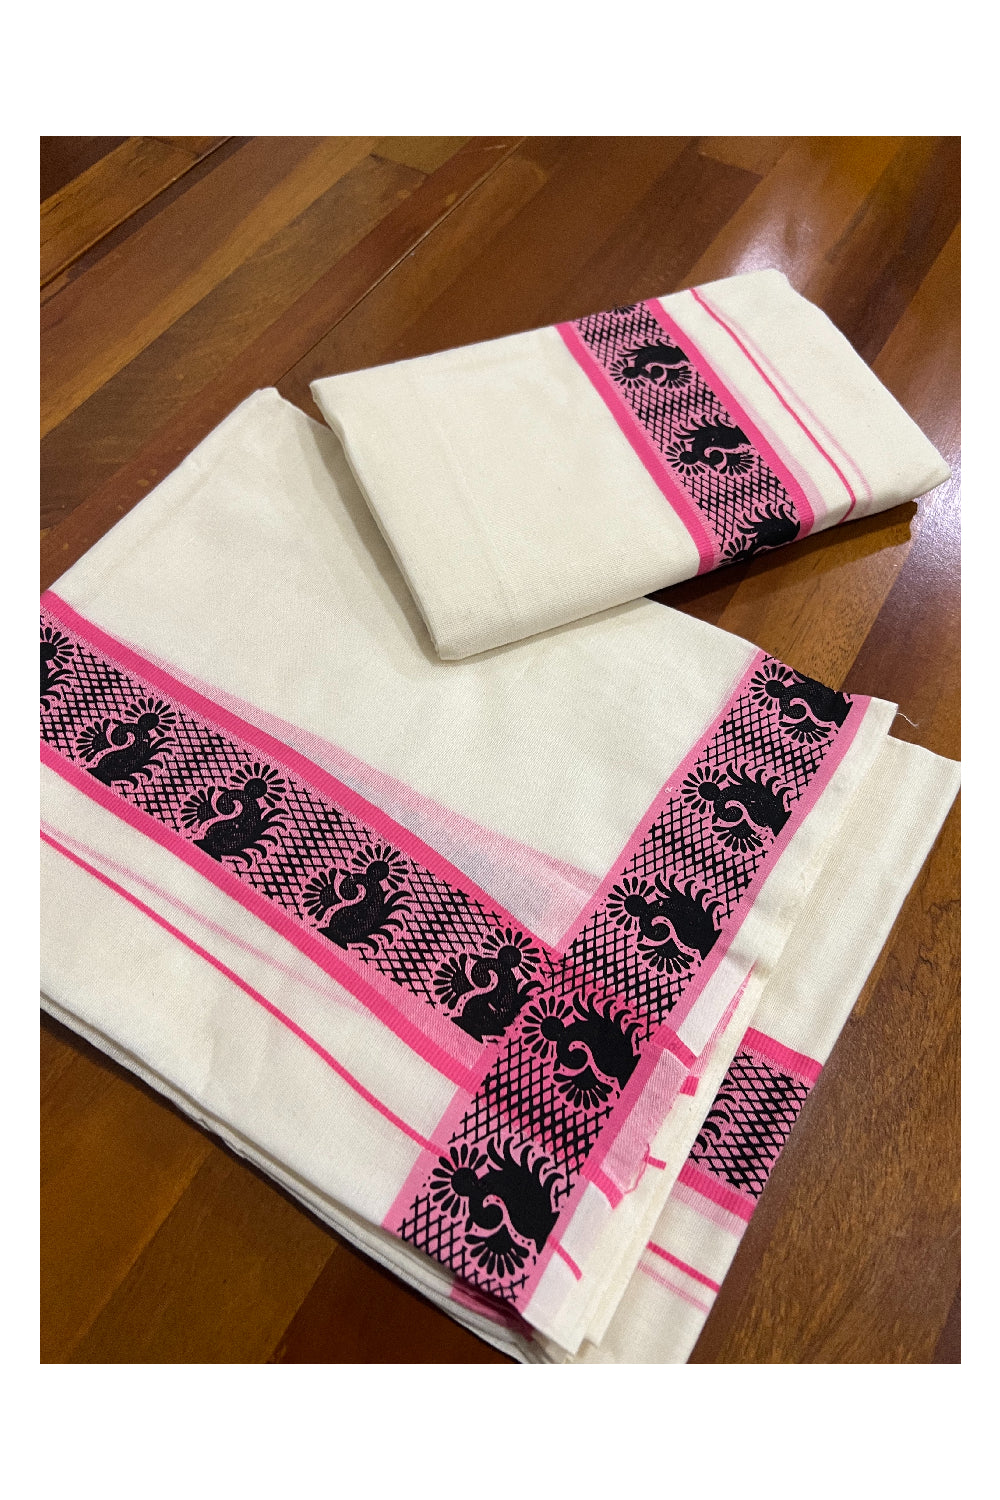 Kerala Cotton Set Mundu (Mundum Neriyathum) with Black Paisley Block Prints in Pink Border